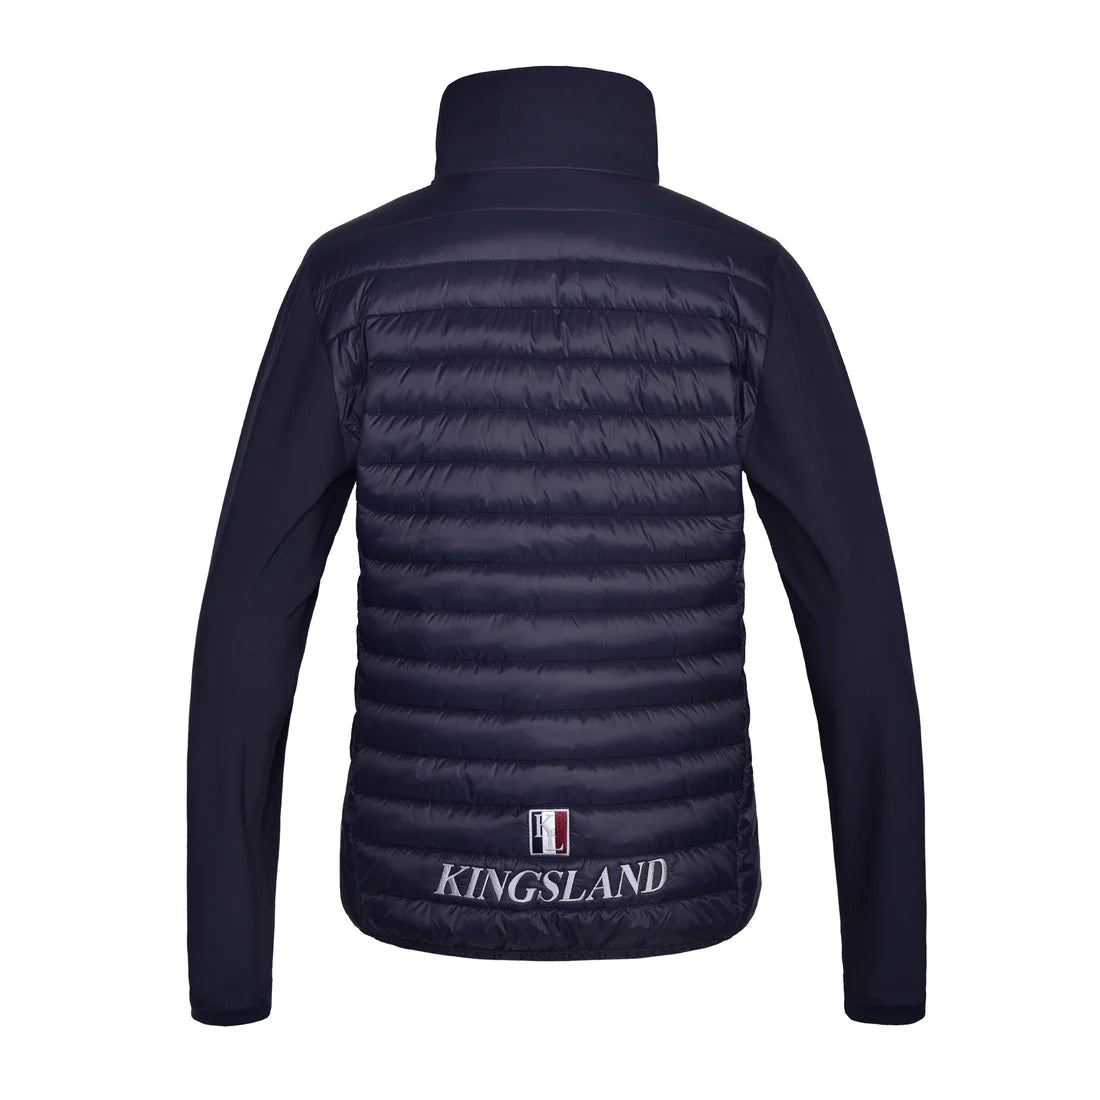 Kingsland - Classic Unisex Padded Jacket